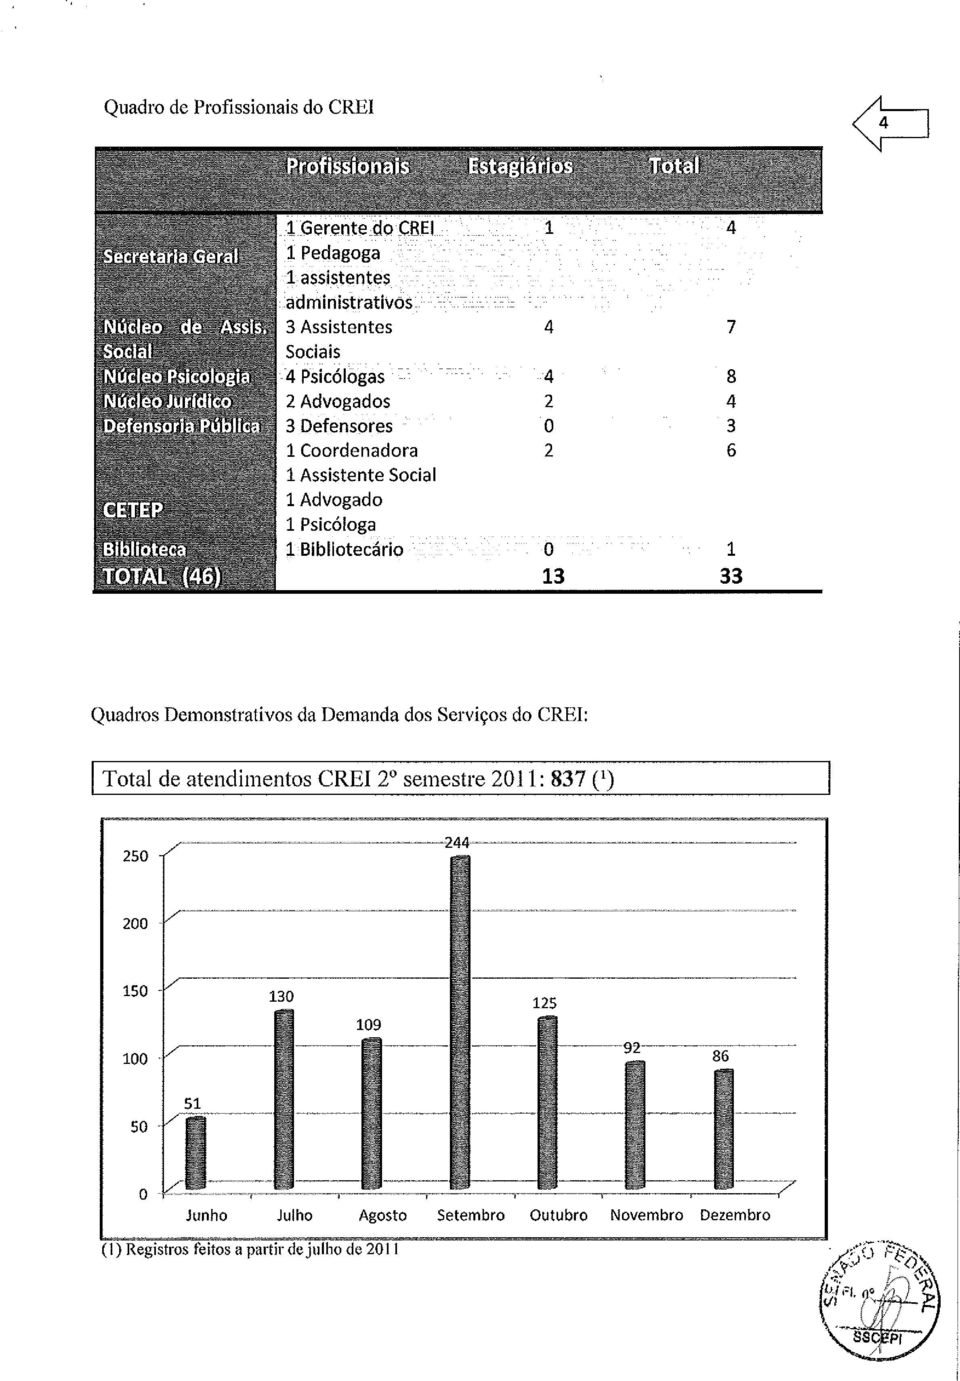 Demonstrativos da Demanda dos Serviços do CREI: ITotal de atendimentos CREI 2 semestre 2011: 837 (I) 250 200 150-100./ ': /I -.